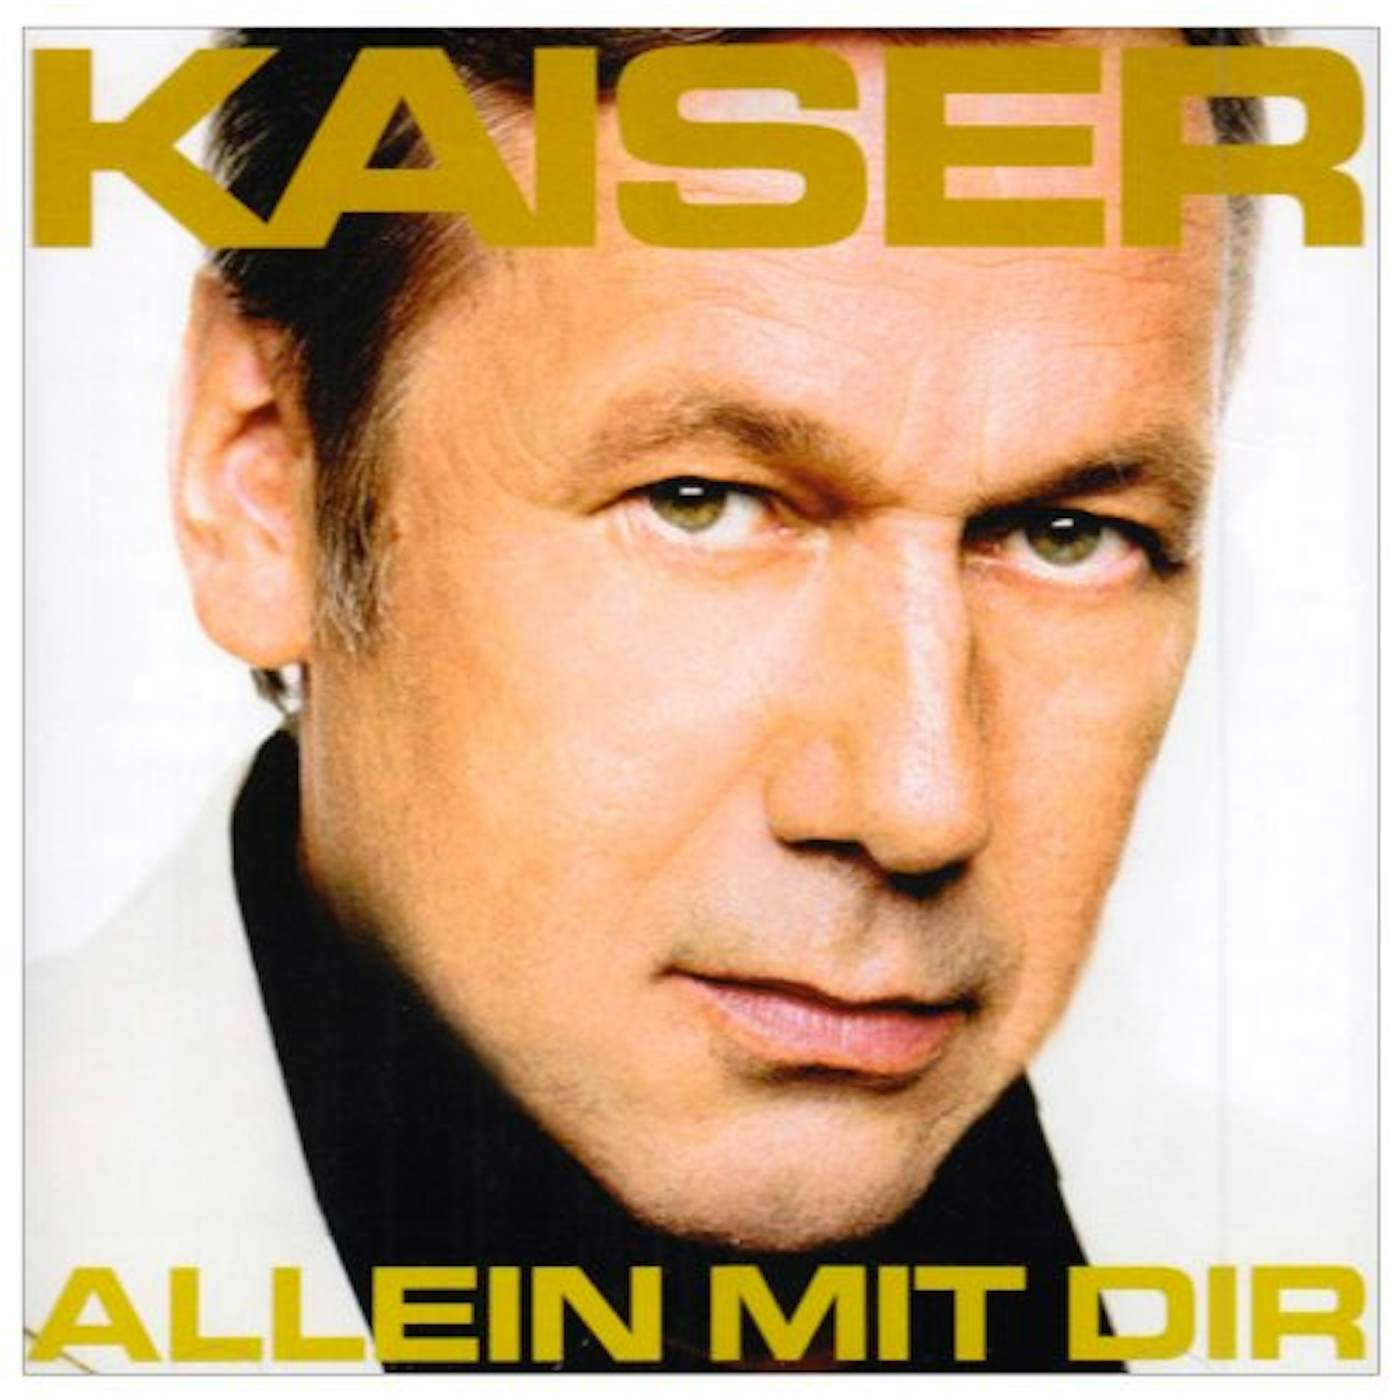 Roland Kaiser ALLEIN MIT DIR CD